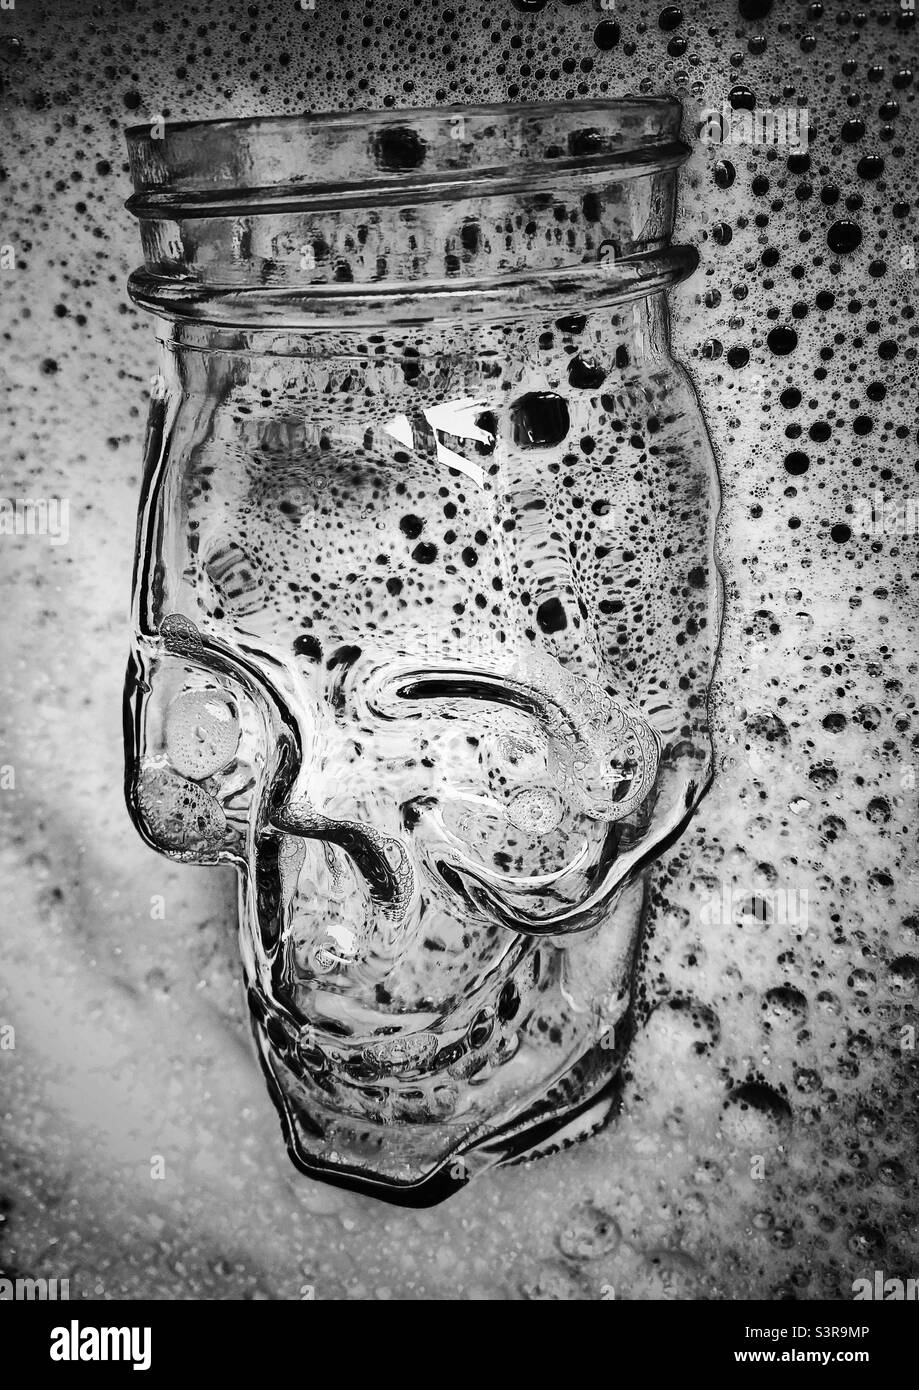 Una fotografia in bianco e nero di un vaso in vetro a forma di cranio in una ciotola di acqua saponata Foto Stock